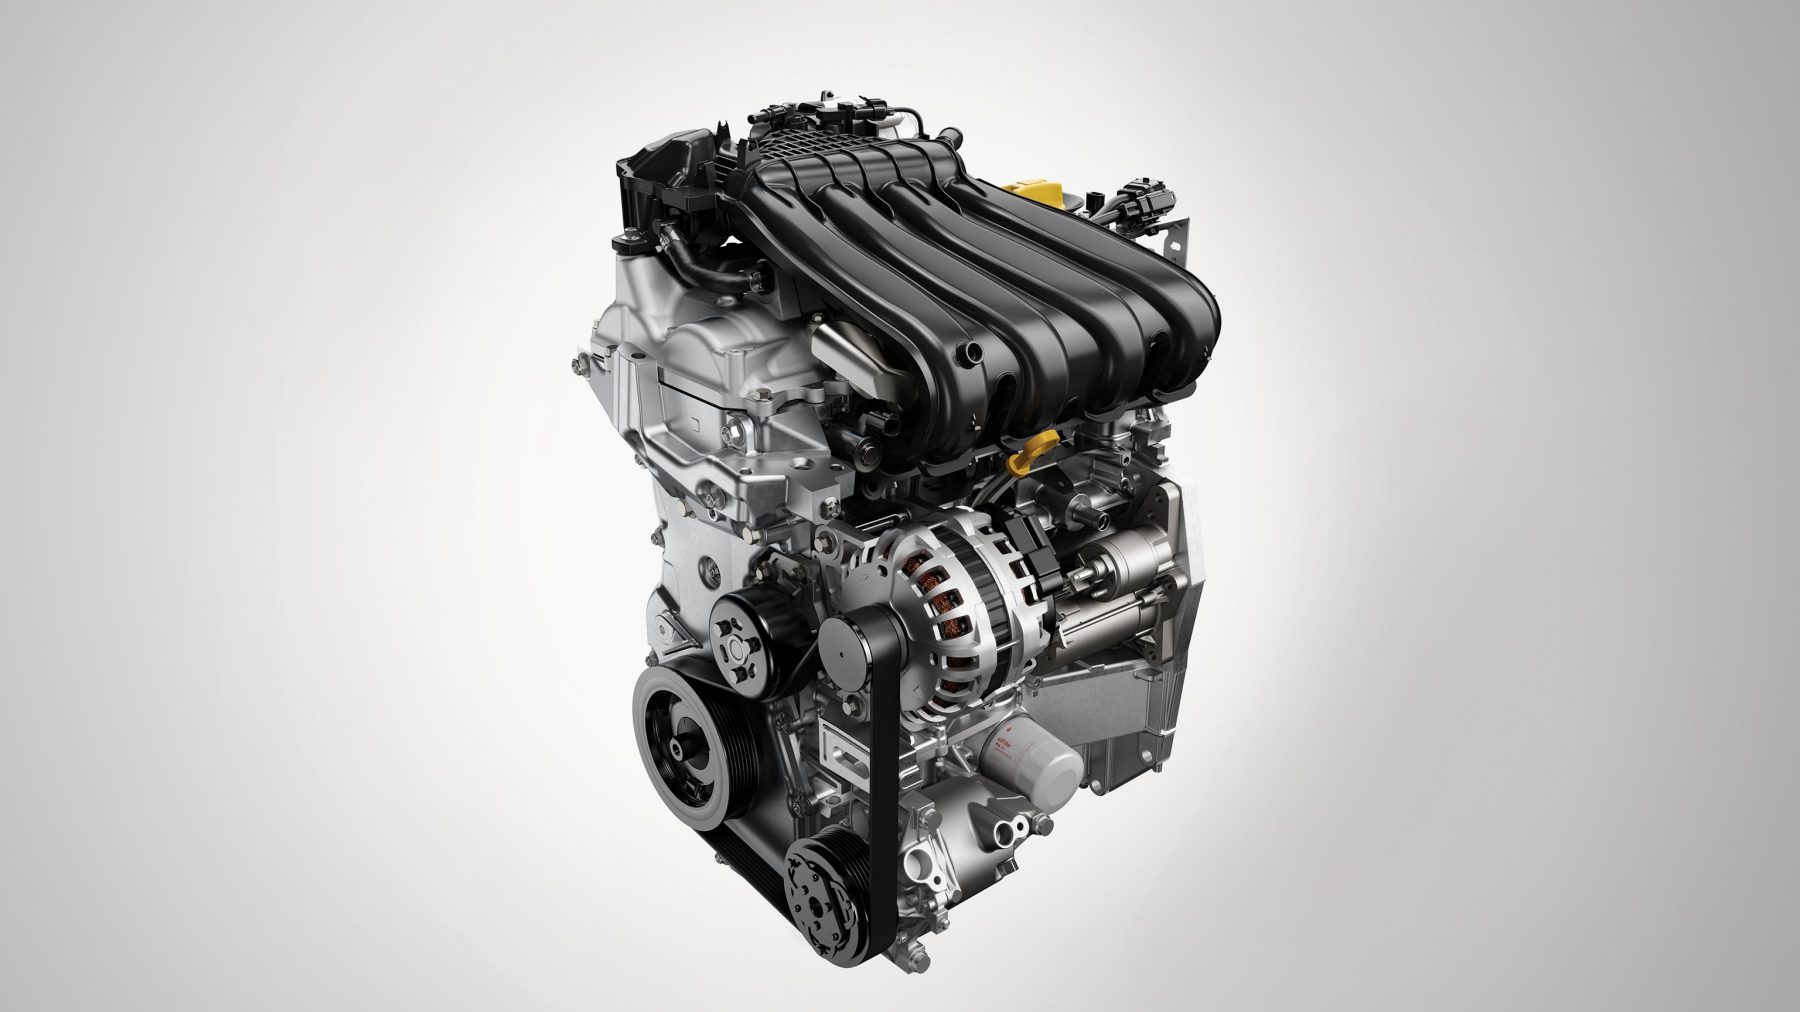 Двигатель renault k4m 1.6 литра - характеристики, ресурс, проблемы, отзывы